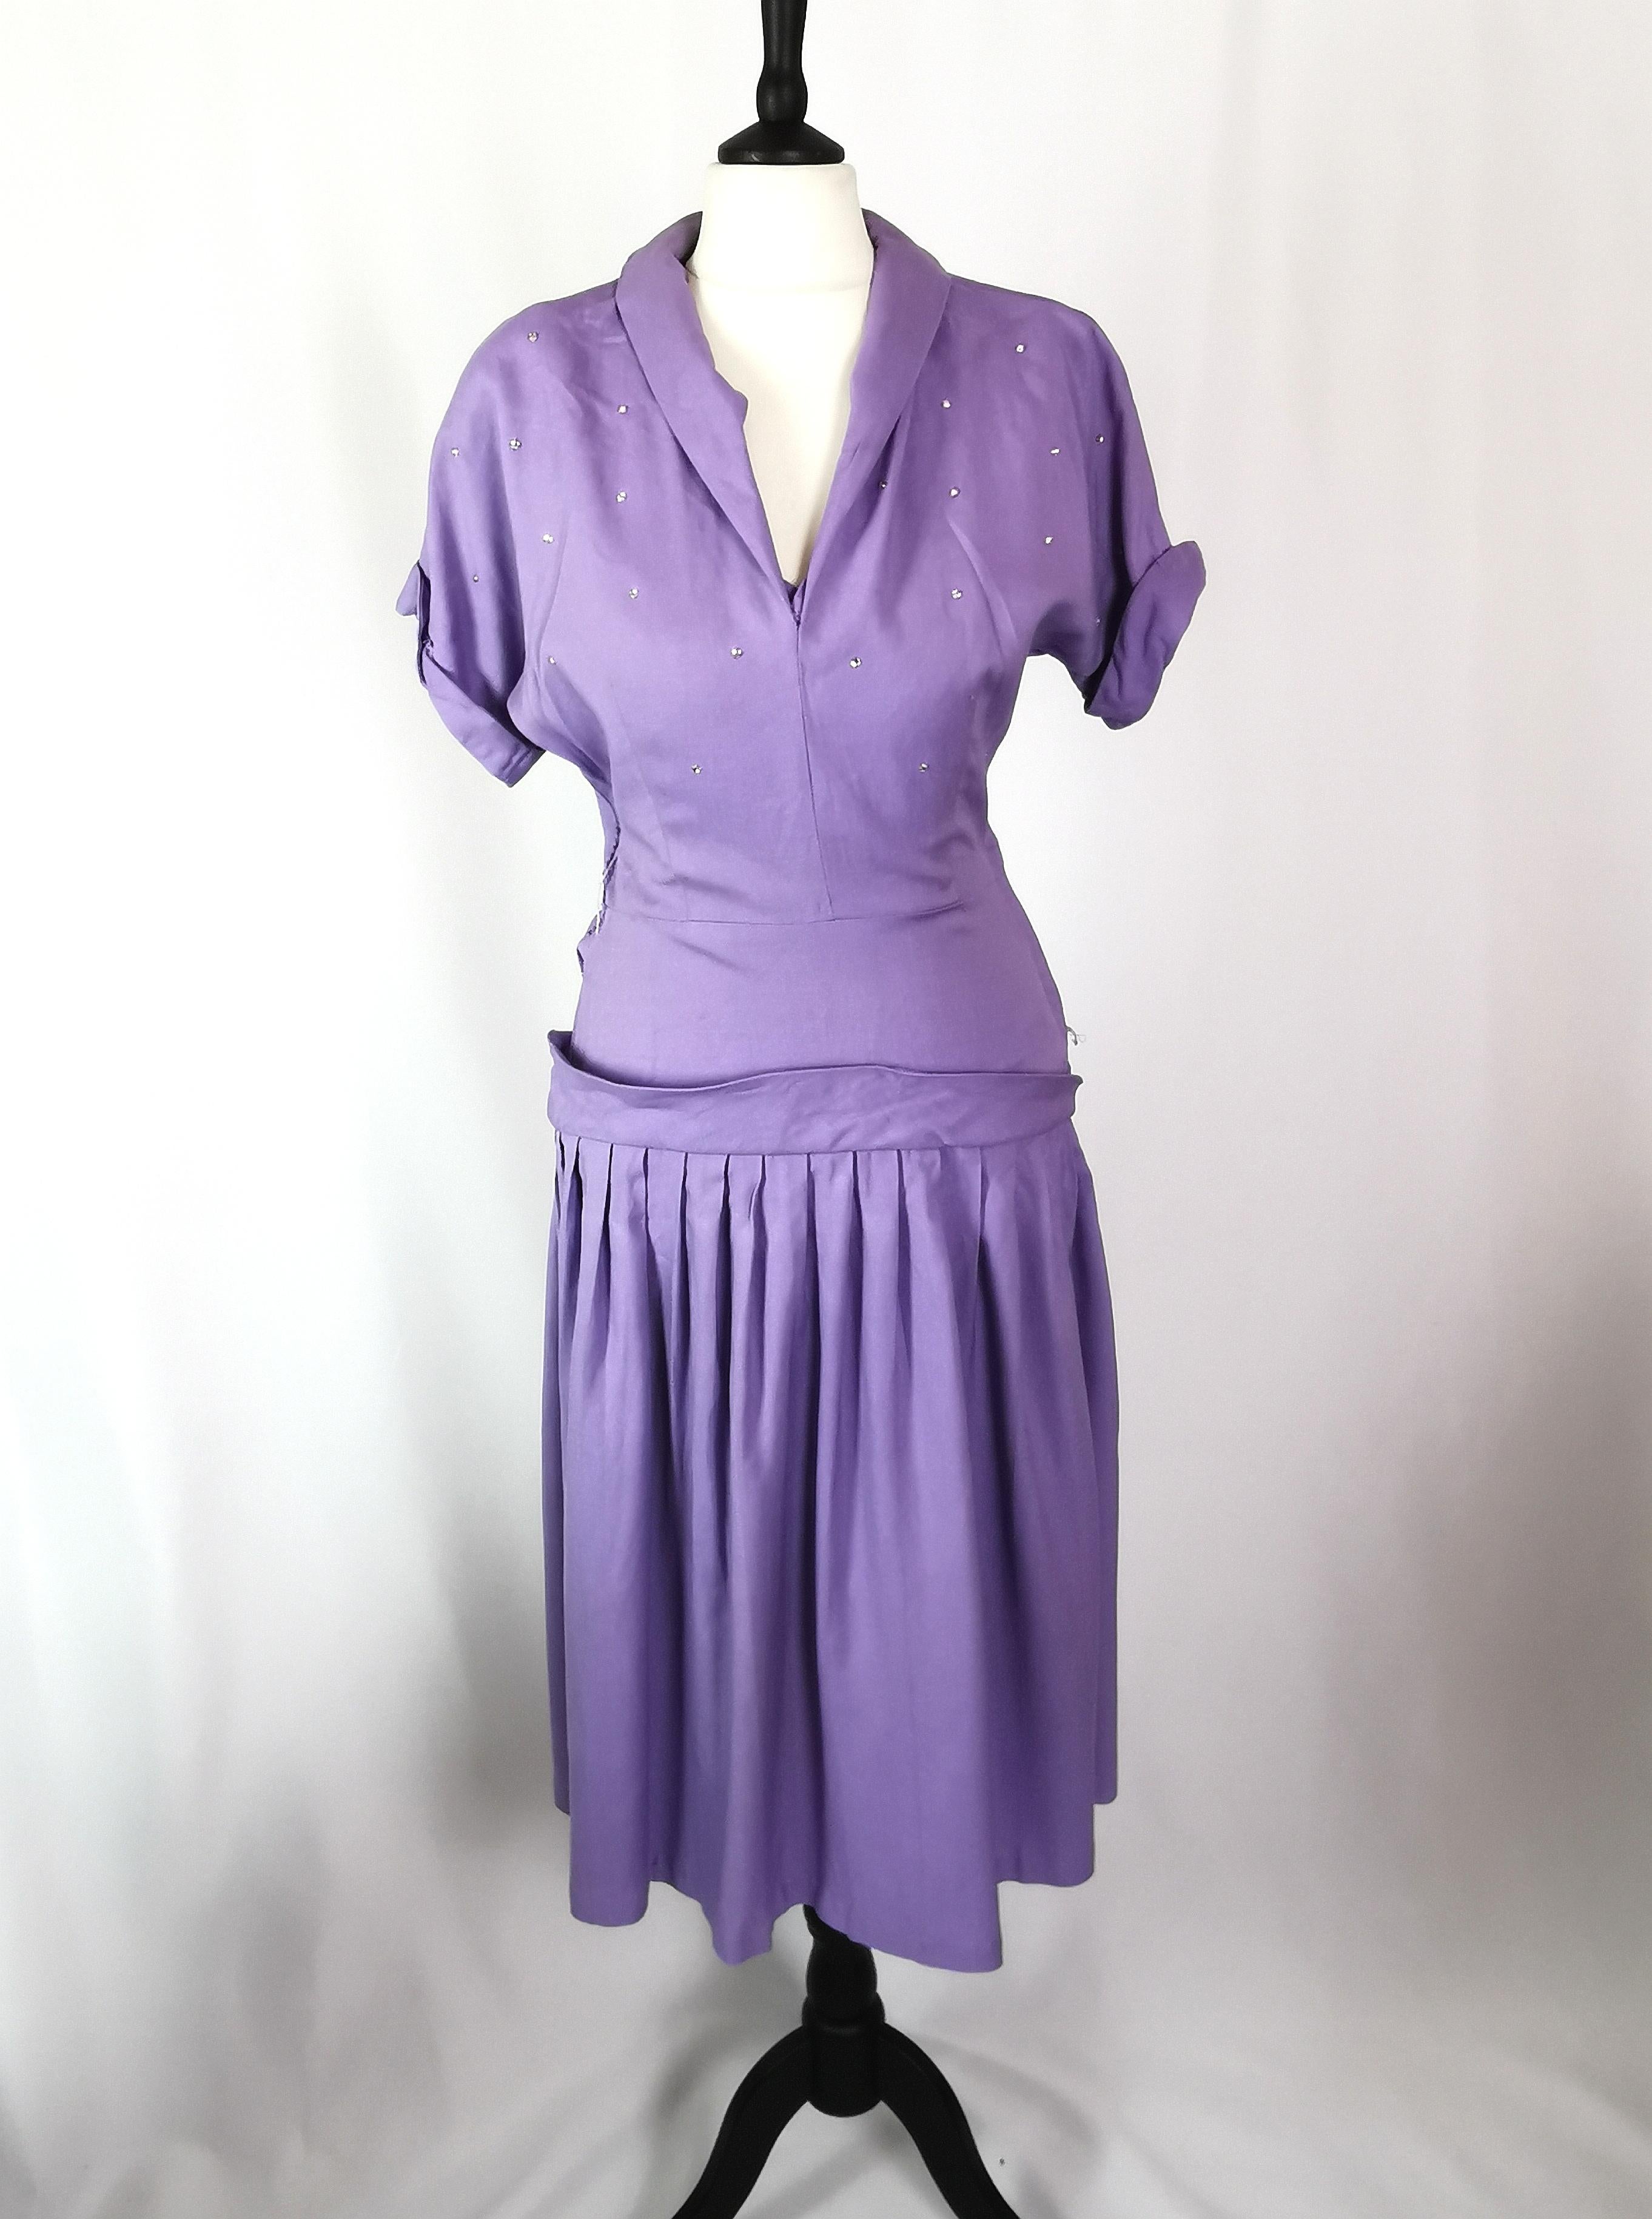 Une robe lilas vintage des années 1940 tout simplement stupéfiante.

Fabriqué à partir d'un mélange de coton lourd et de laine dans une couleur lilas vibrante, il est à hauteur du genou avec une jupe complète.

La robe a des manches courtes avec un